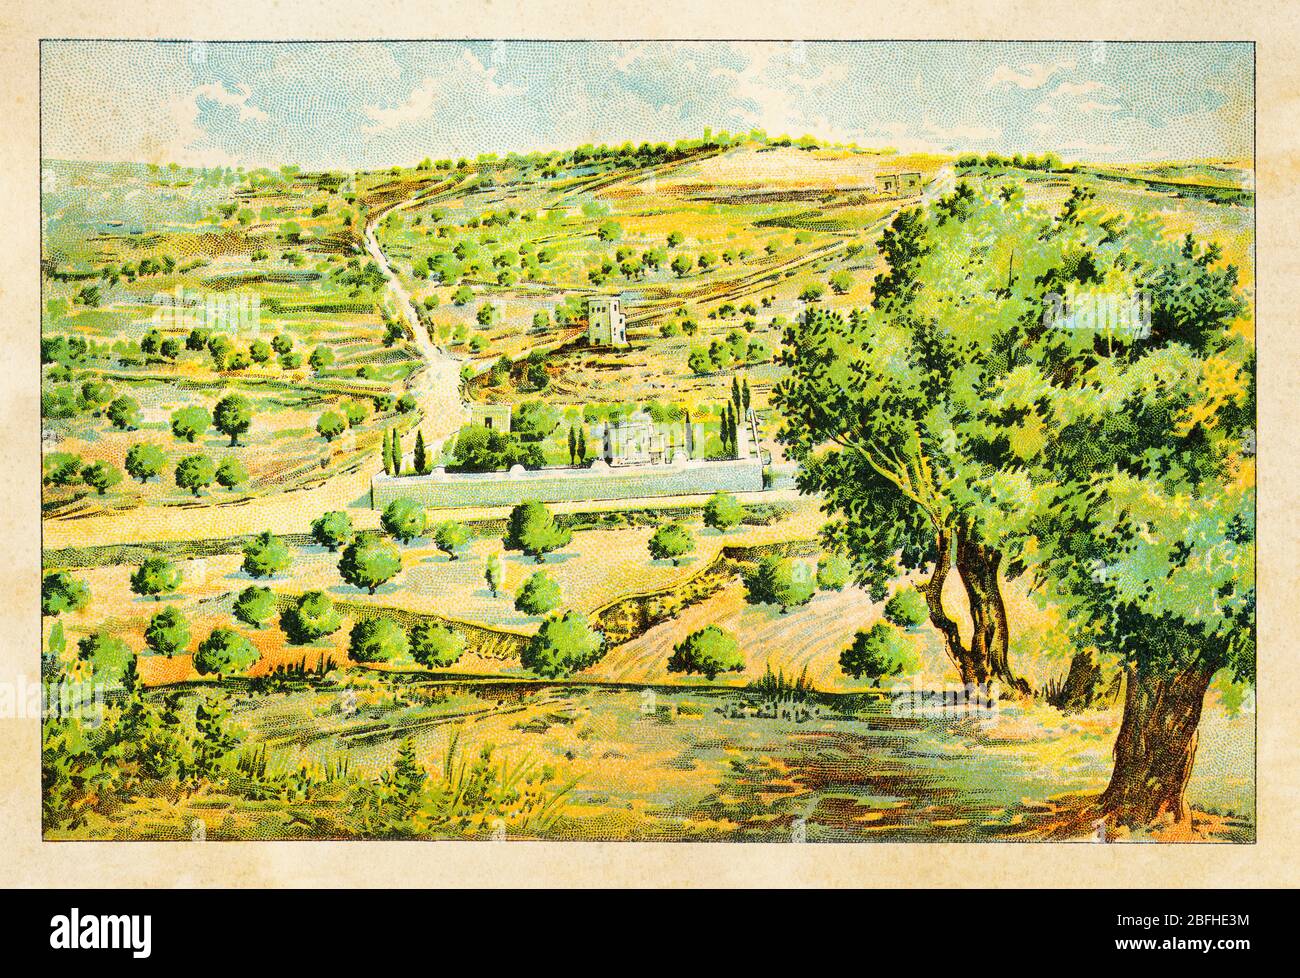 Mount of Olives (Jebel Et-Tur) General view of Garden of Gethsemane, Jerusalem. Israel, old color chromolithography The Holy Land 1898 Stock Photo